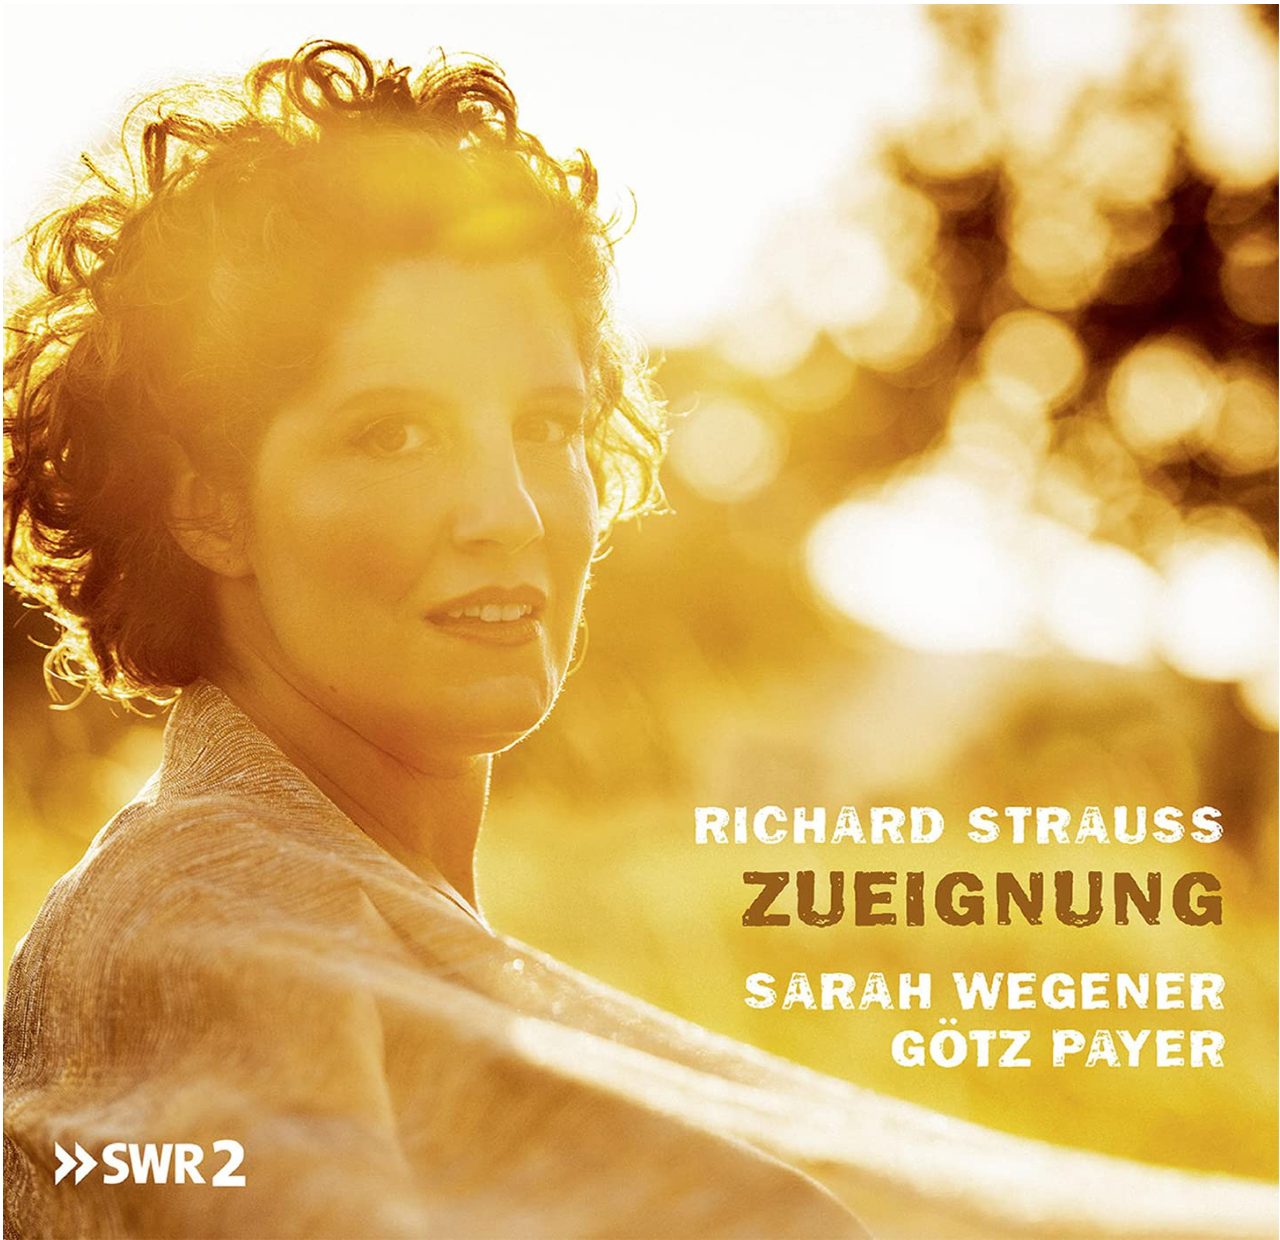 Richard Strauss: Zueignung - Sarah Wegener and Götz Payer